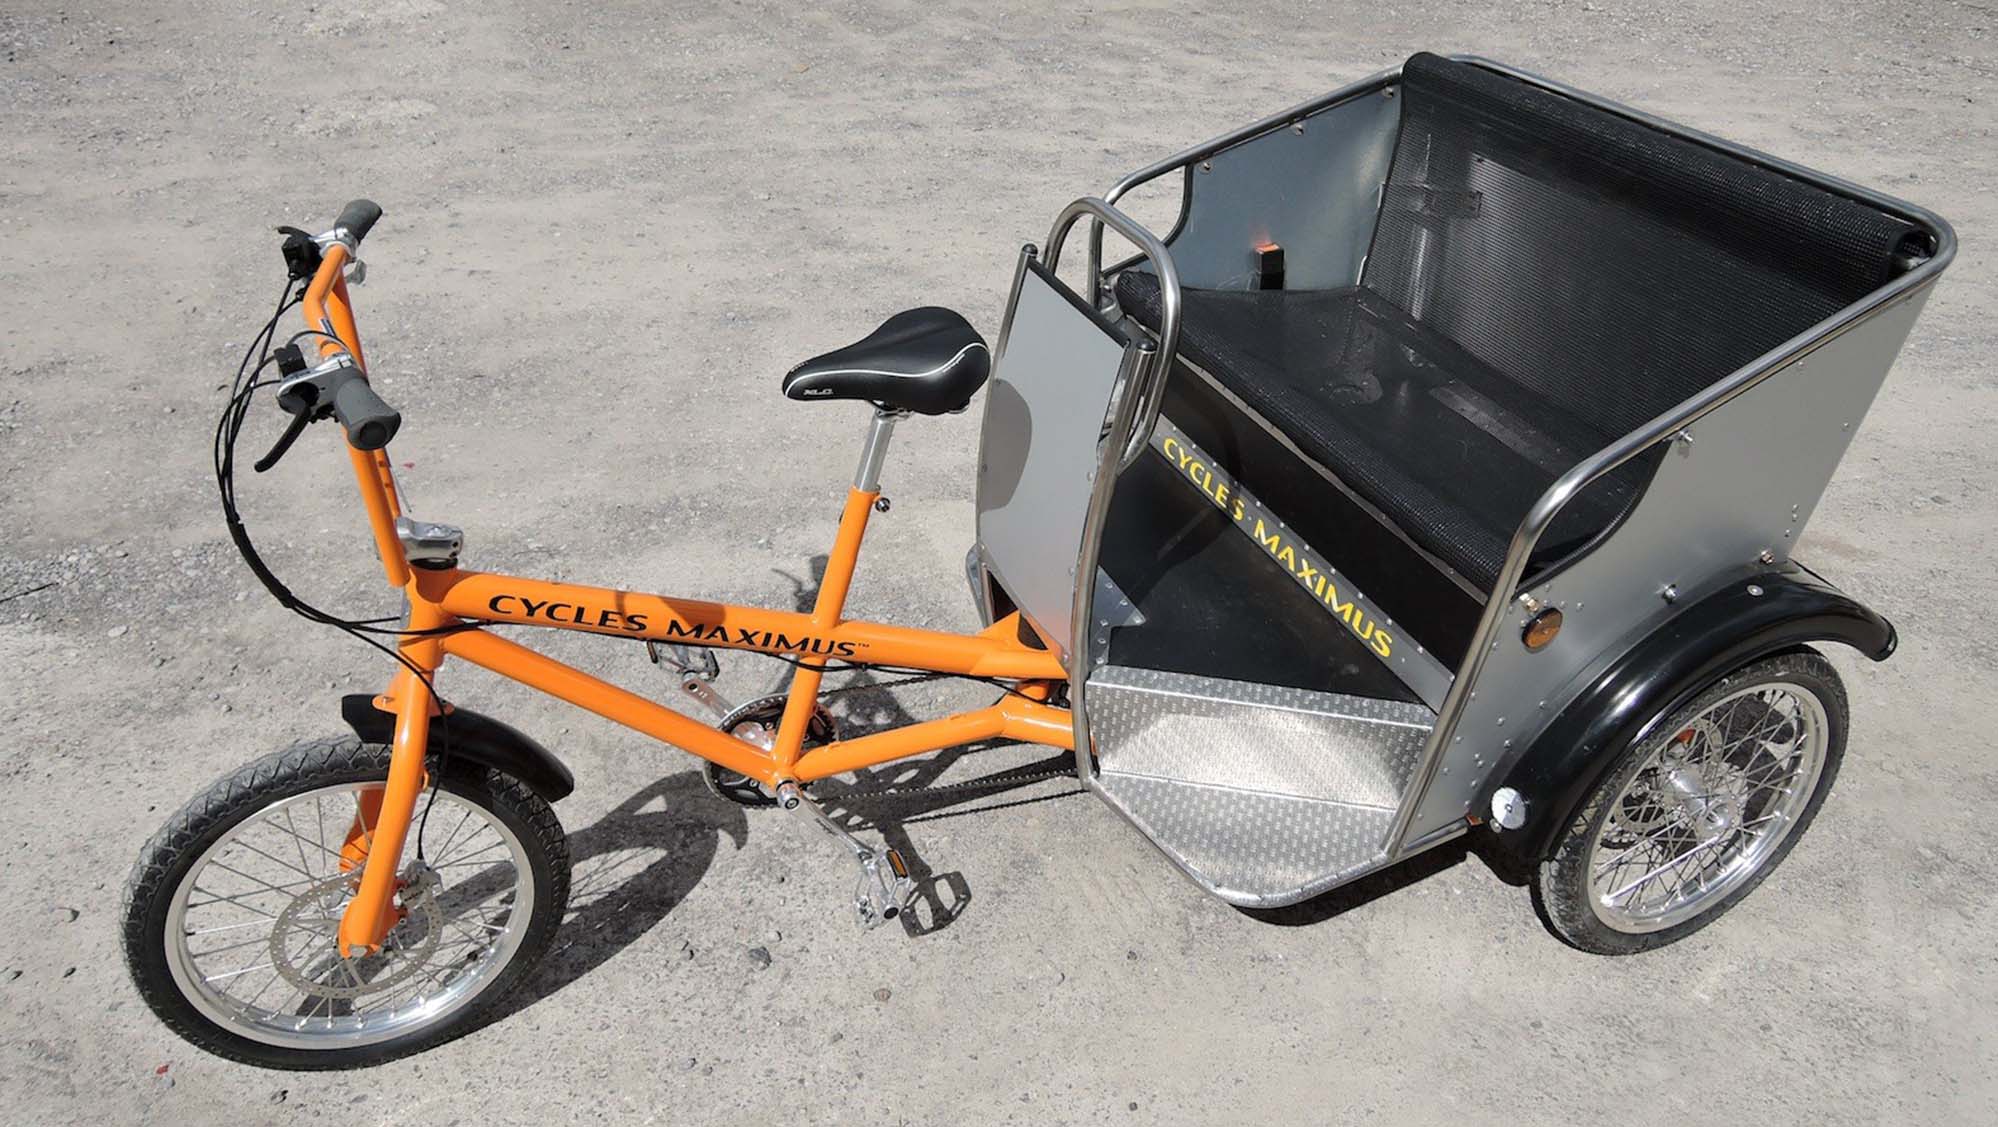 Pedicab Rickshaws - carry three passengers - Cycles Maximus Trikes